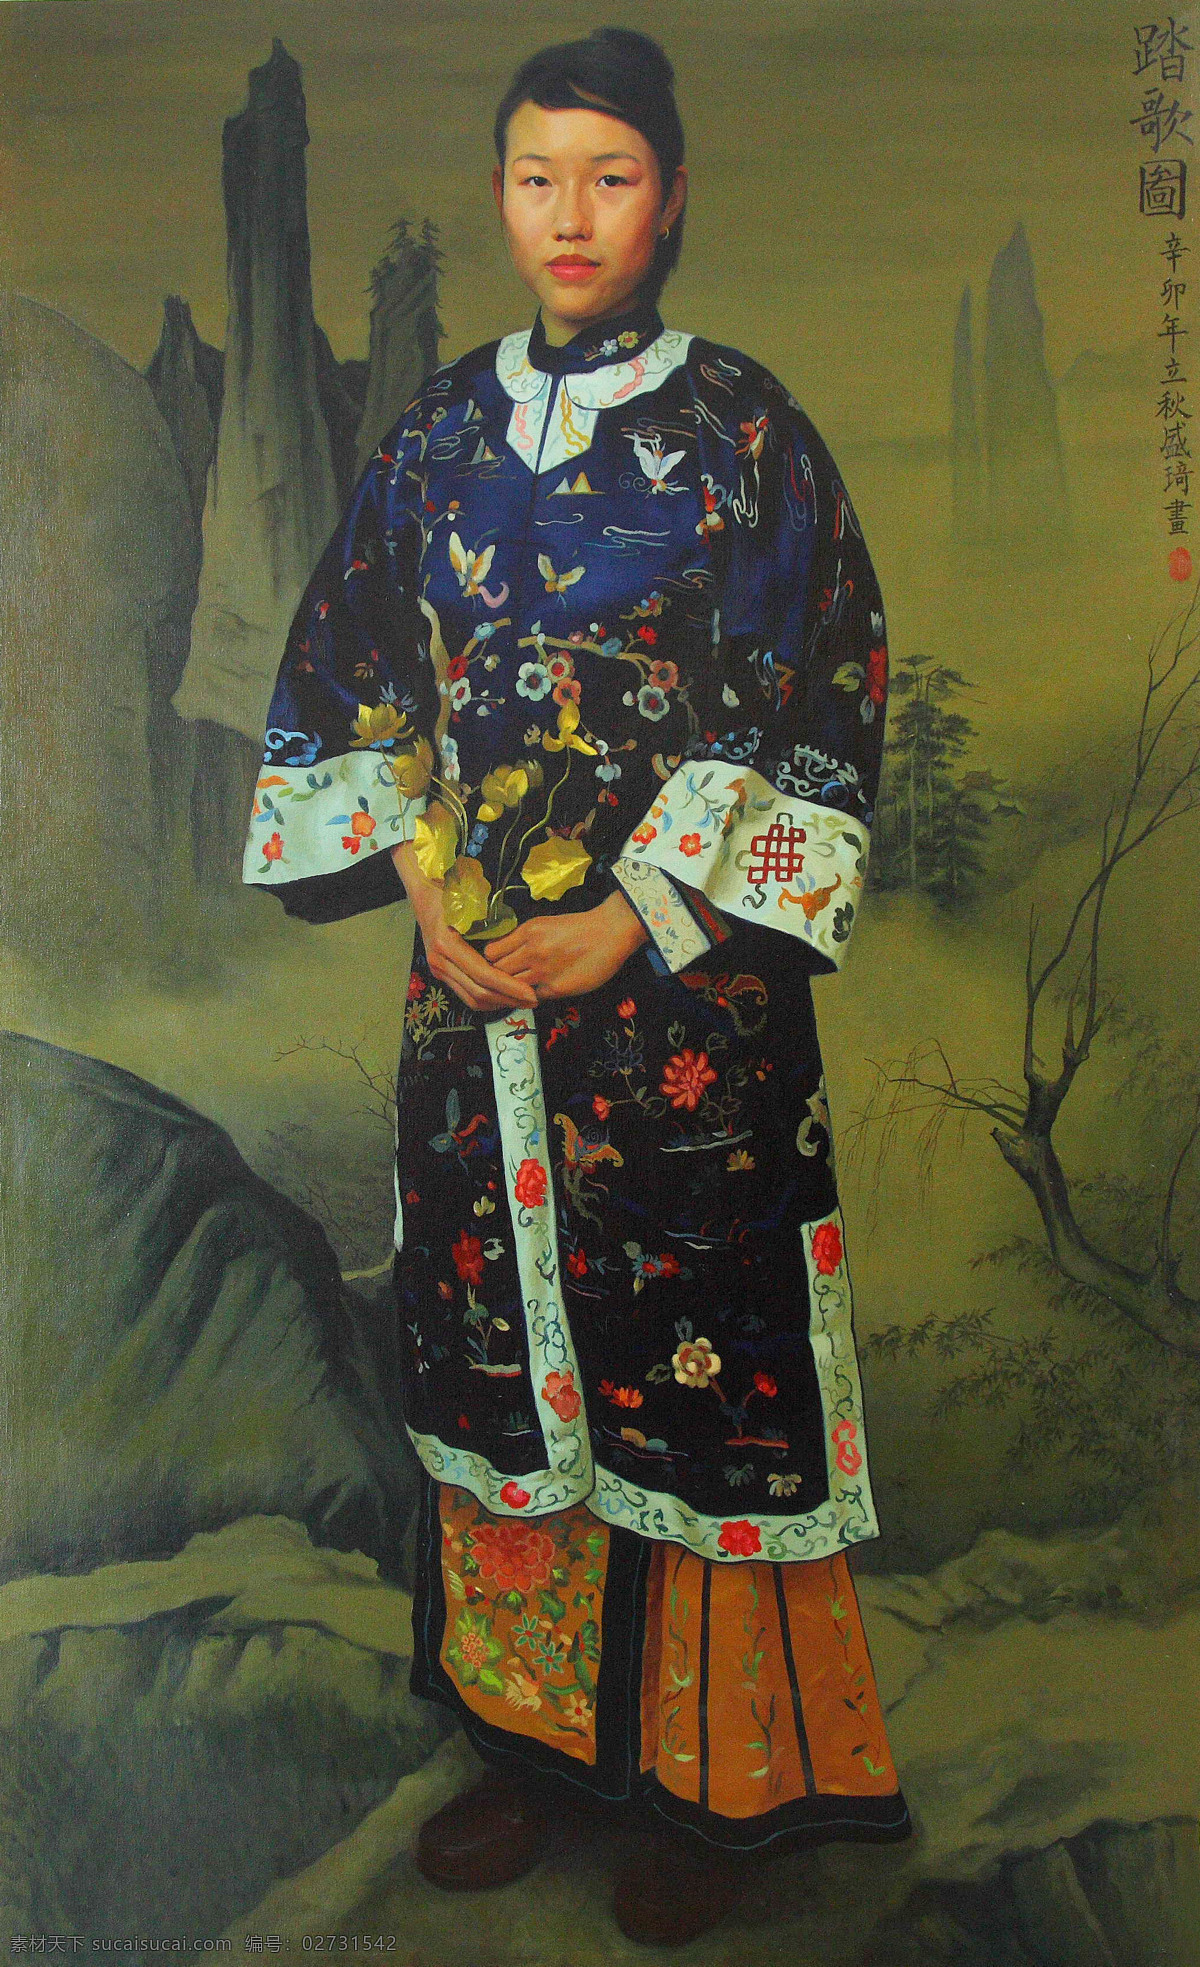 中国 古代 女性 油画 挂画 壁画 名画 油画写生 人物油画 绘画艺术 装饰画 绘画 文化艺术 艺术品 世界名画 书画文字